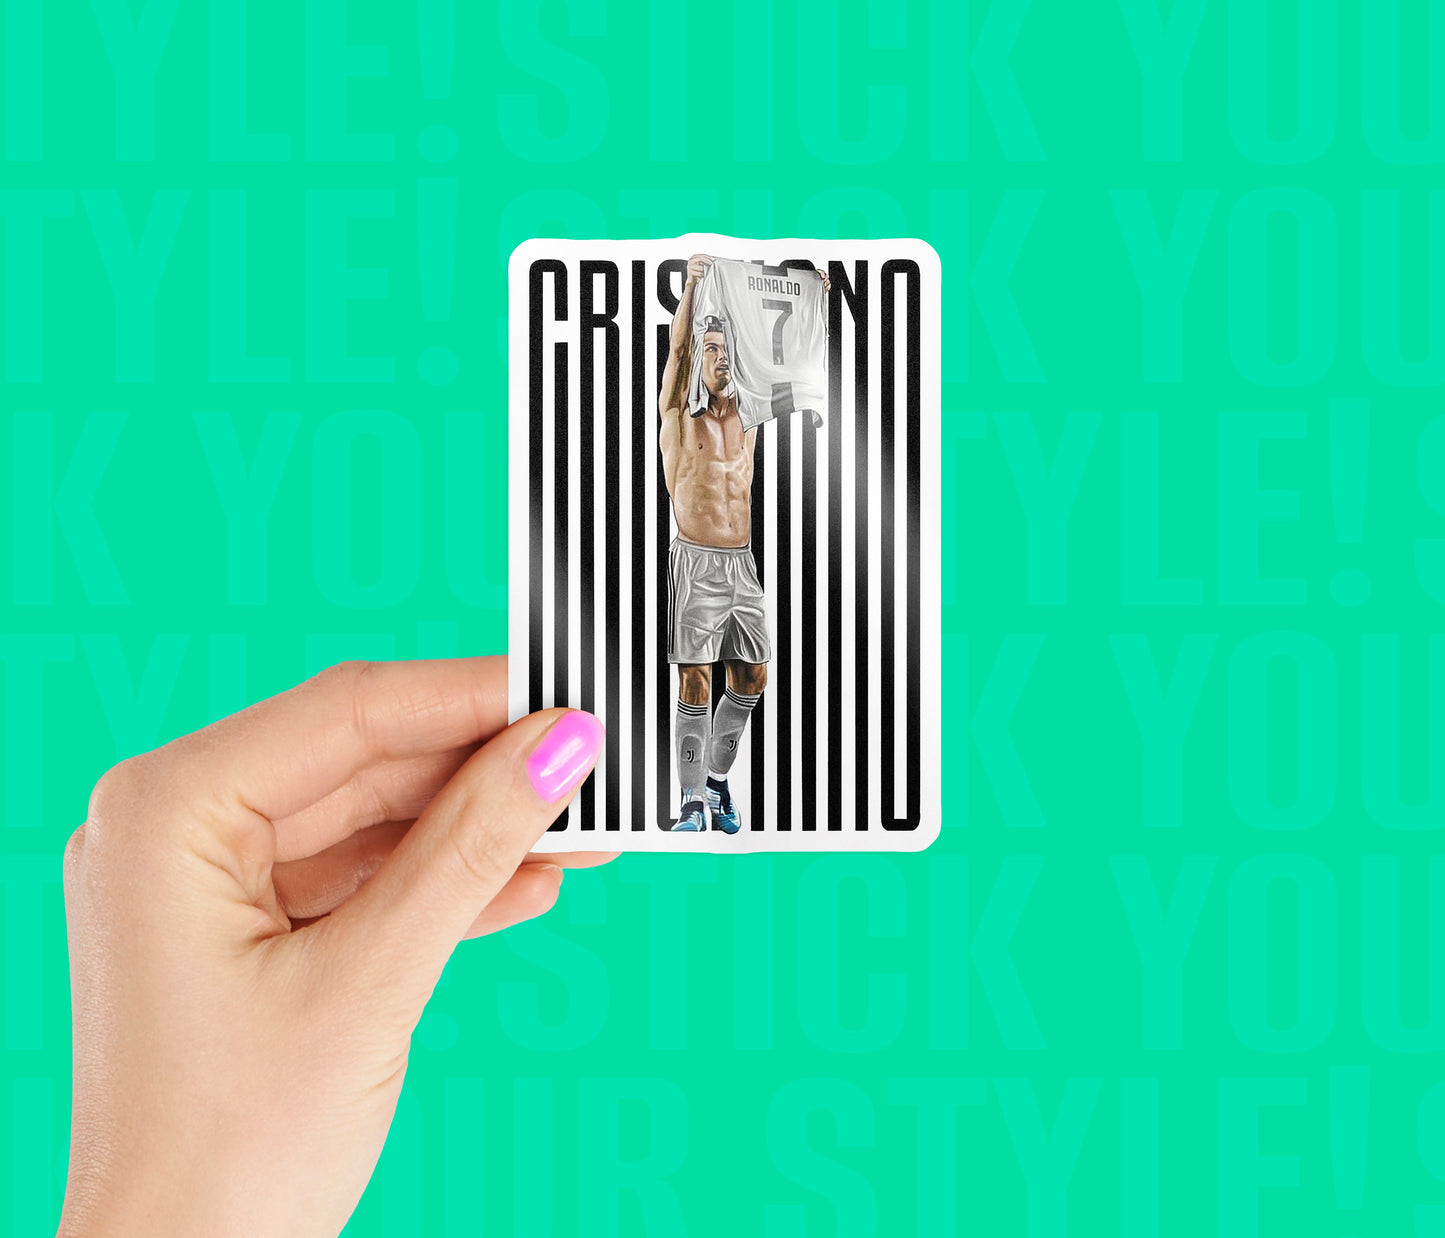 Cristiano Ronaldo No.07 Magnetic Sticker